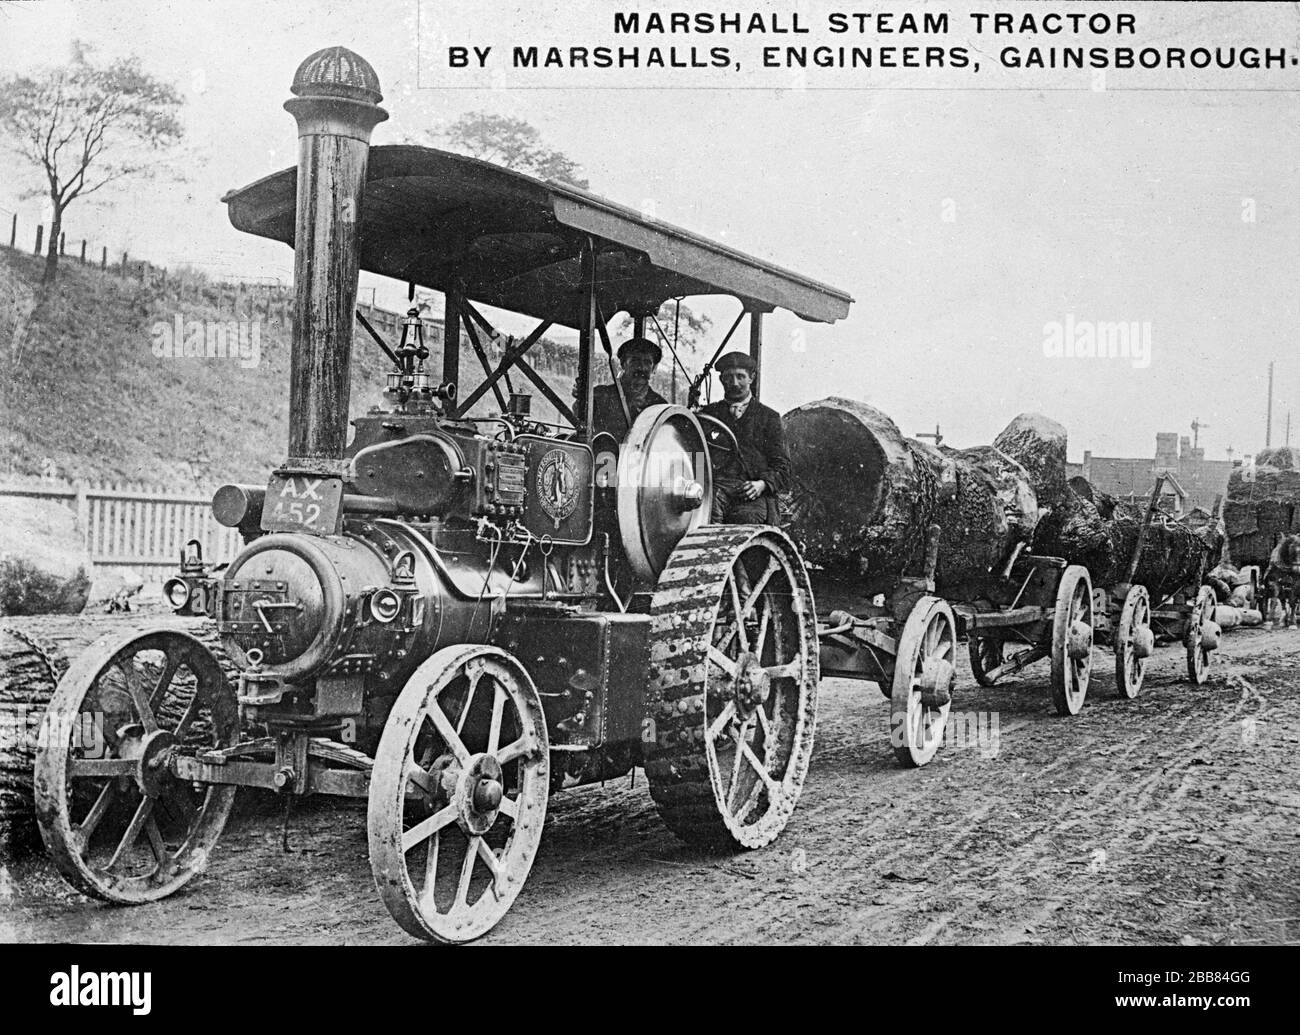 Fotografia vintage in bianco e nero. Macchine agricole d'epoca. Marshall Steam Tractor, prodotto da Marshall, Sons and Co. Di Gainsborough, Inghilterra. Foto Stock